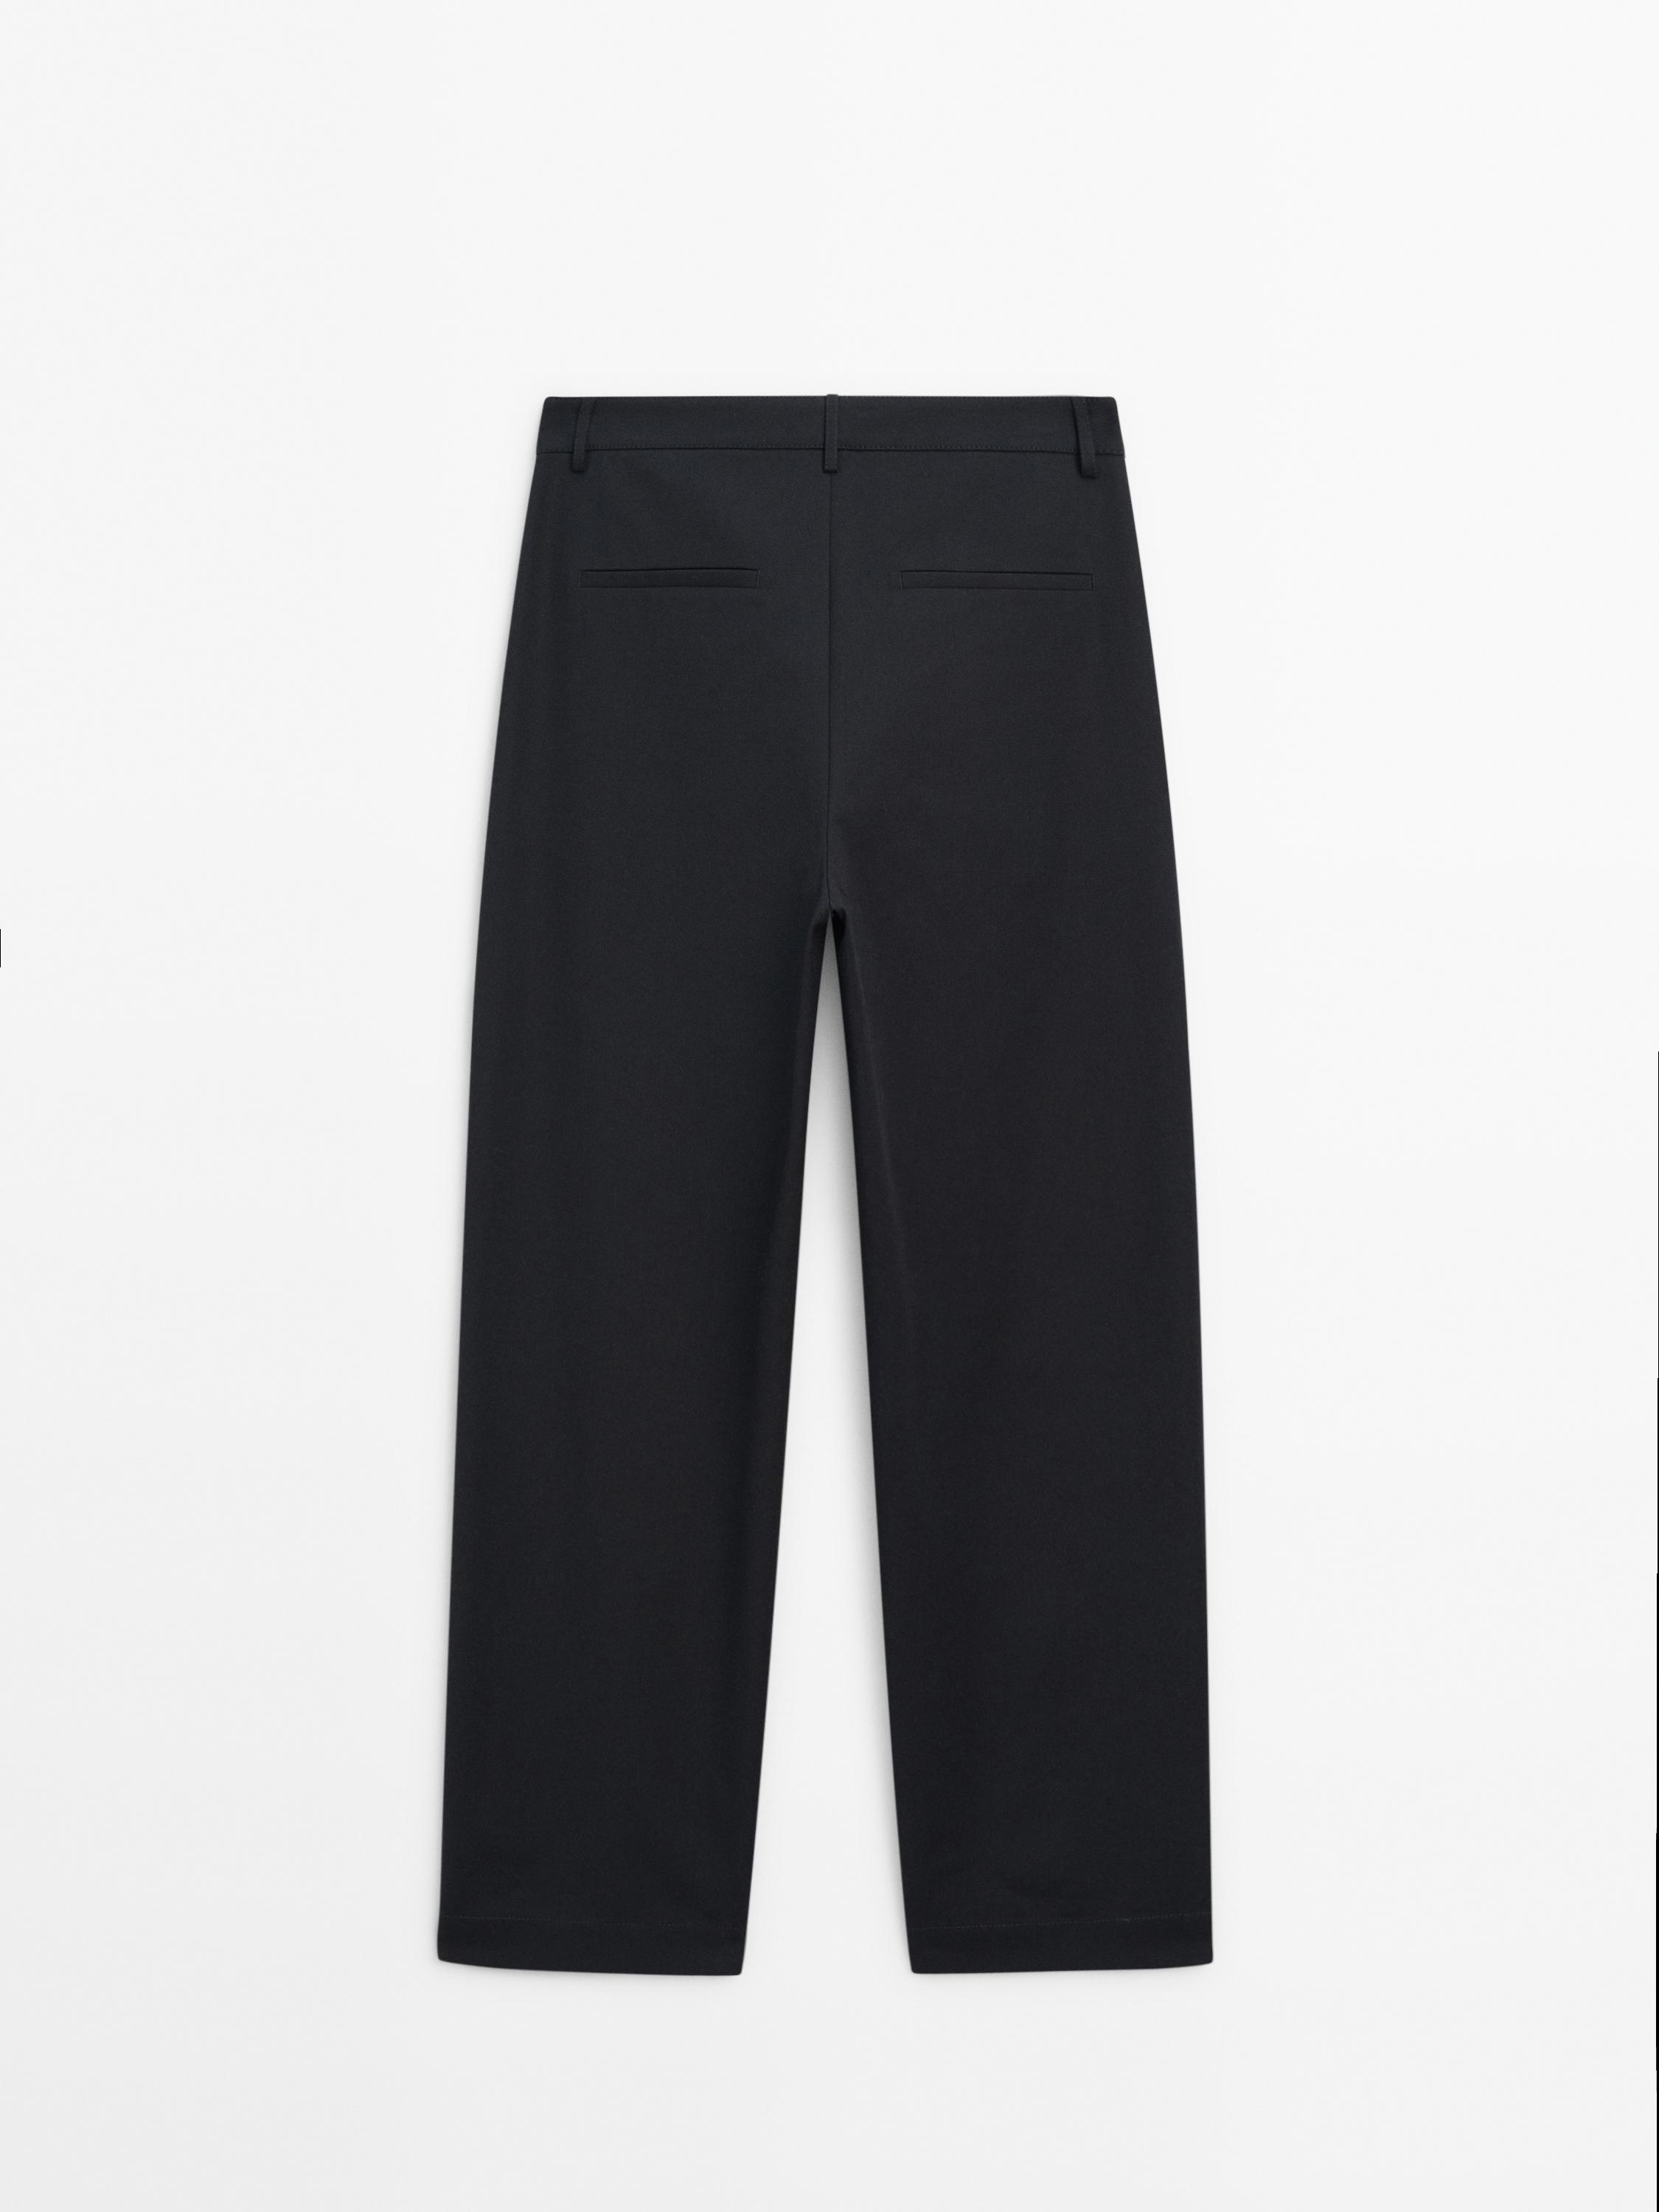 Zara Black Cotton Cropped Stretch Pants - Blue Bungalow